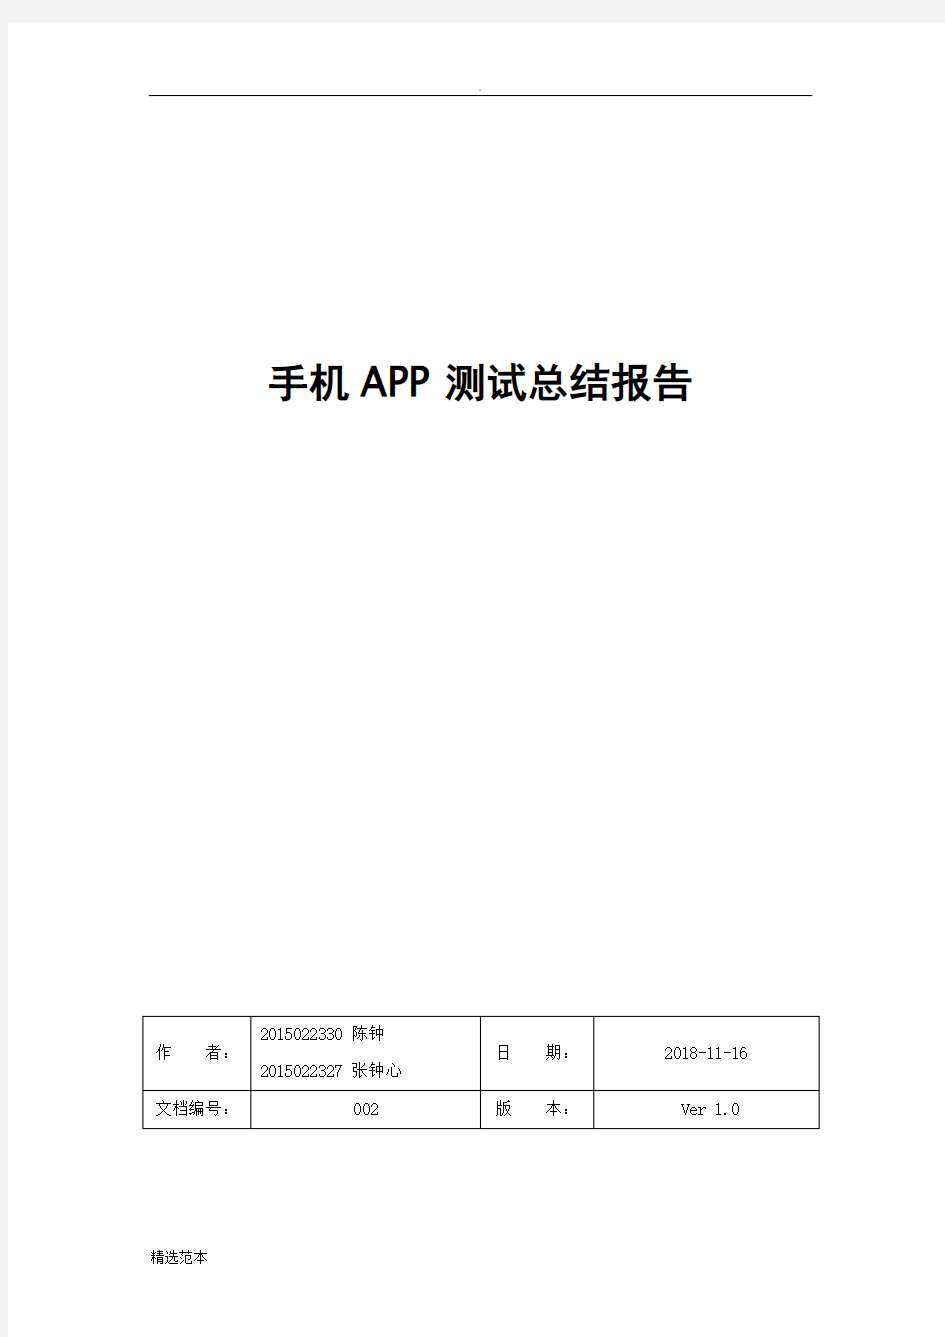 手机APP测试报告模板 最新版